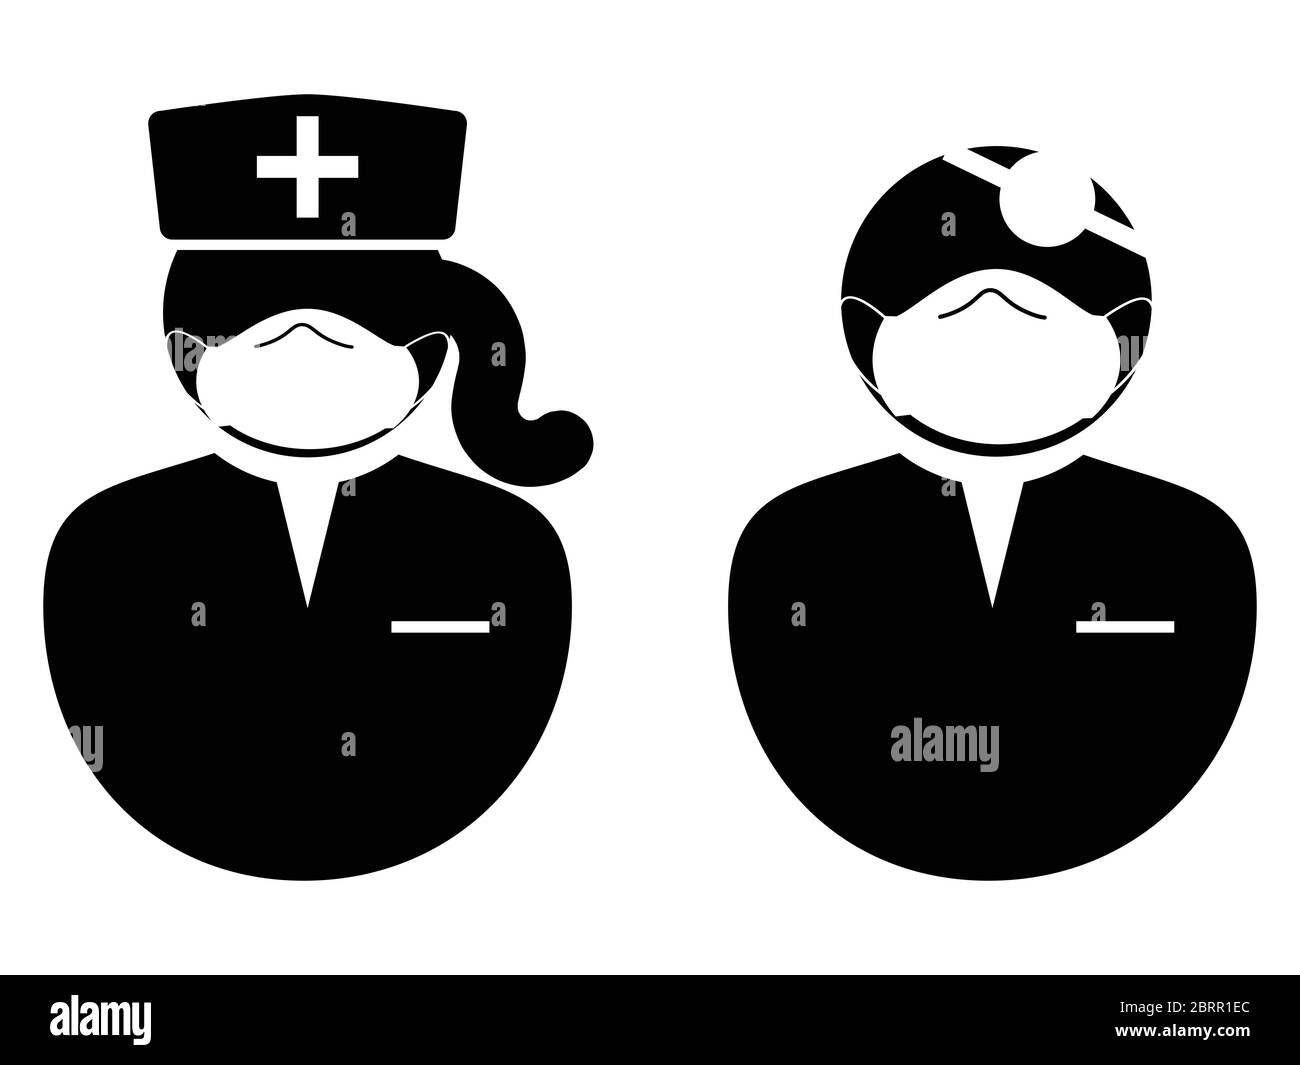 Médecin et infirmière avec icône masque. Icône de pictogramme d'illustration noir et blanc représentant un médecin et une infirmière féminine avec un masque d'EPI. Vecteur EPS Illustration de Vecteur